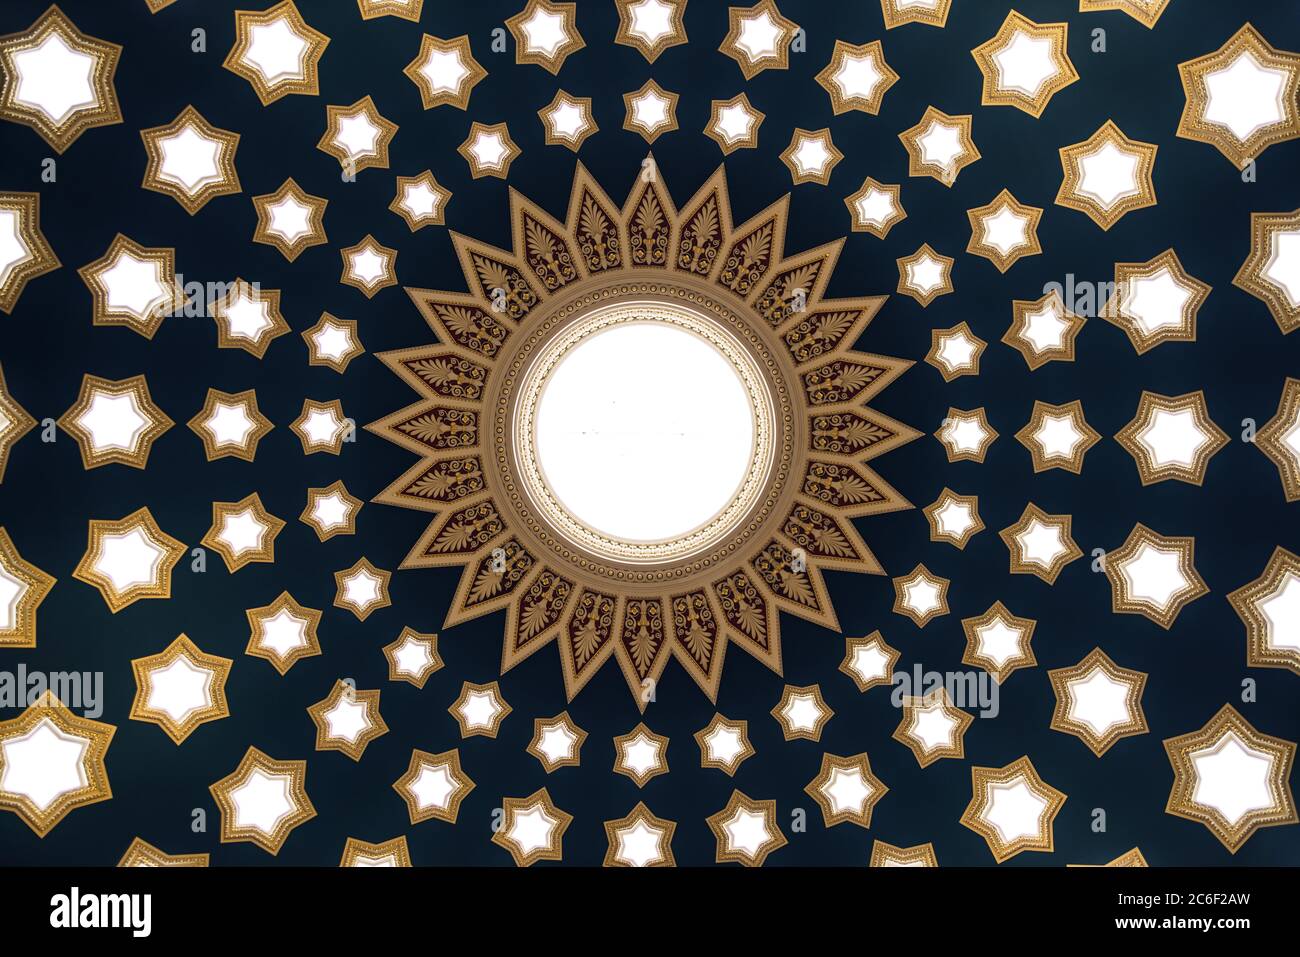 Die Kuppel der Royal Bank of Scotland mit einem blauen Dach und goldenen Sternen um eine weiße und gelbe Sonne Stockfoto